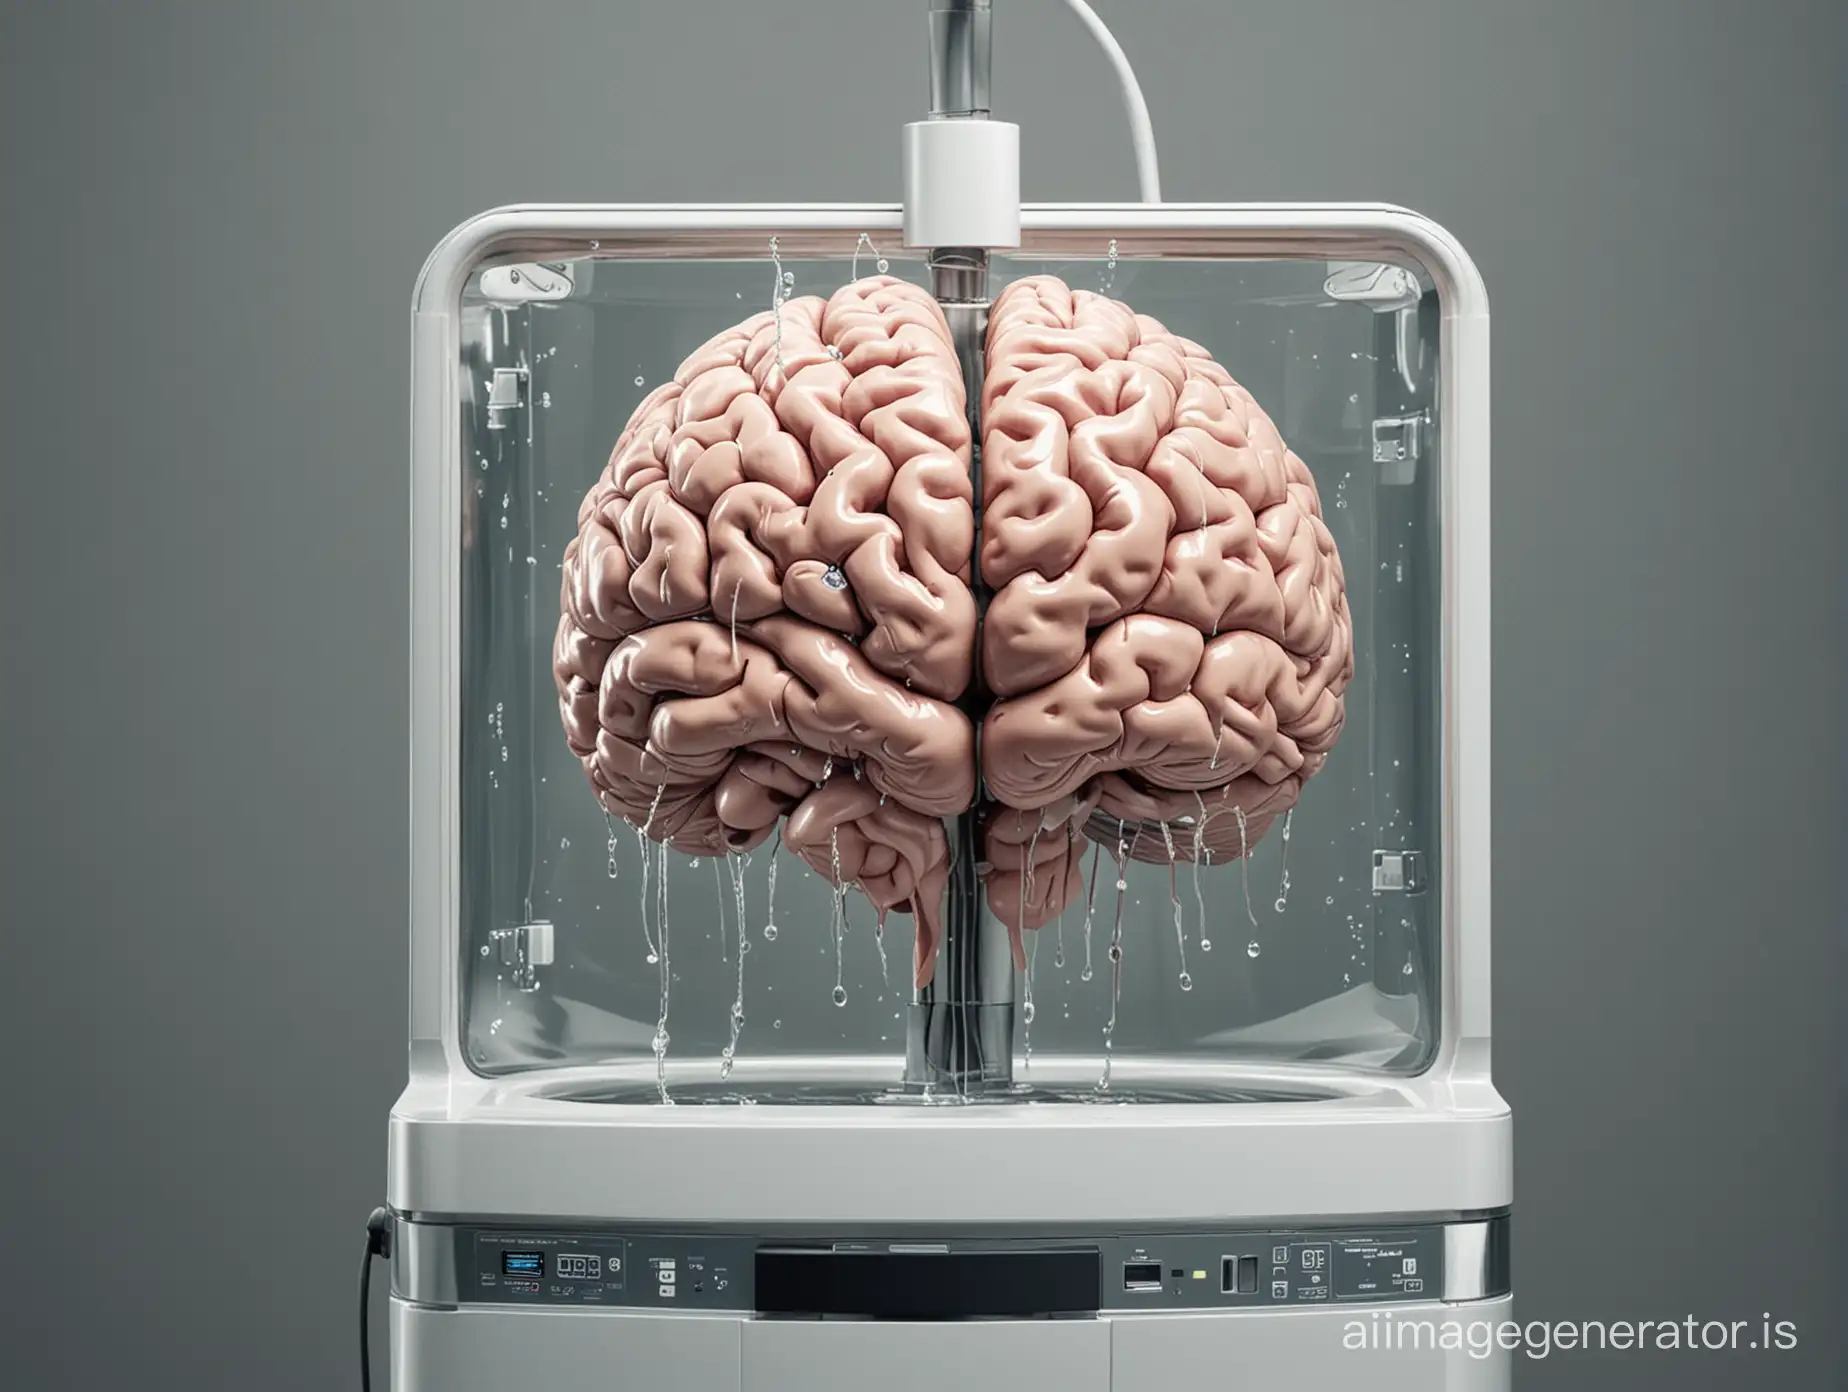 Futuristic-Brainwashing-Machine-Technology-Manipulating-Minds